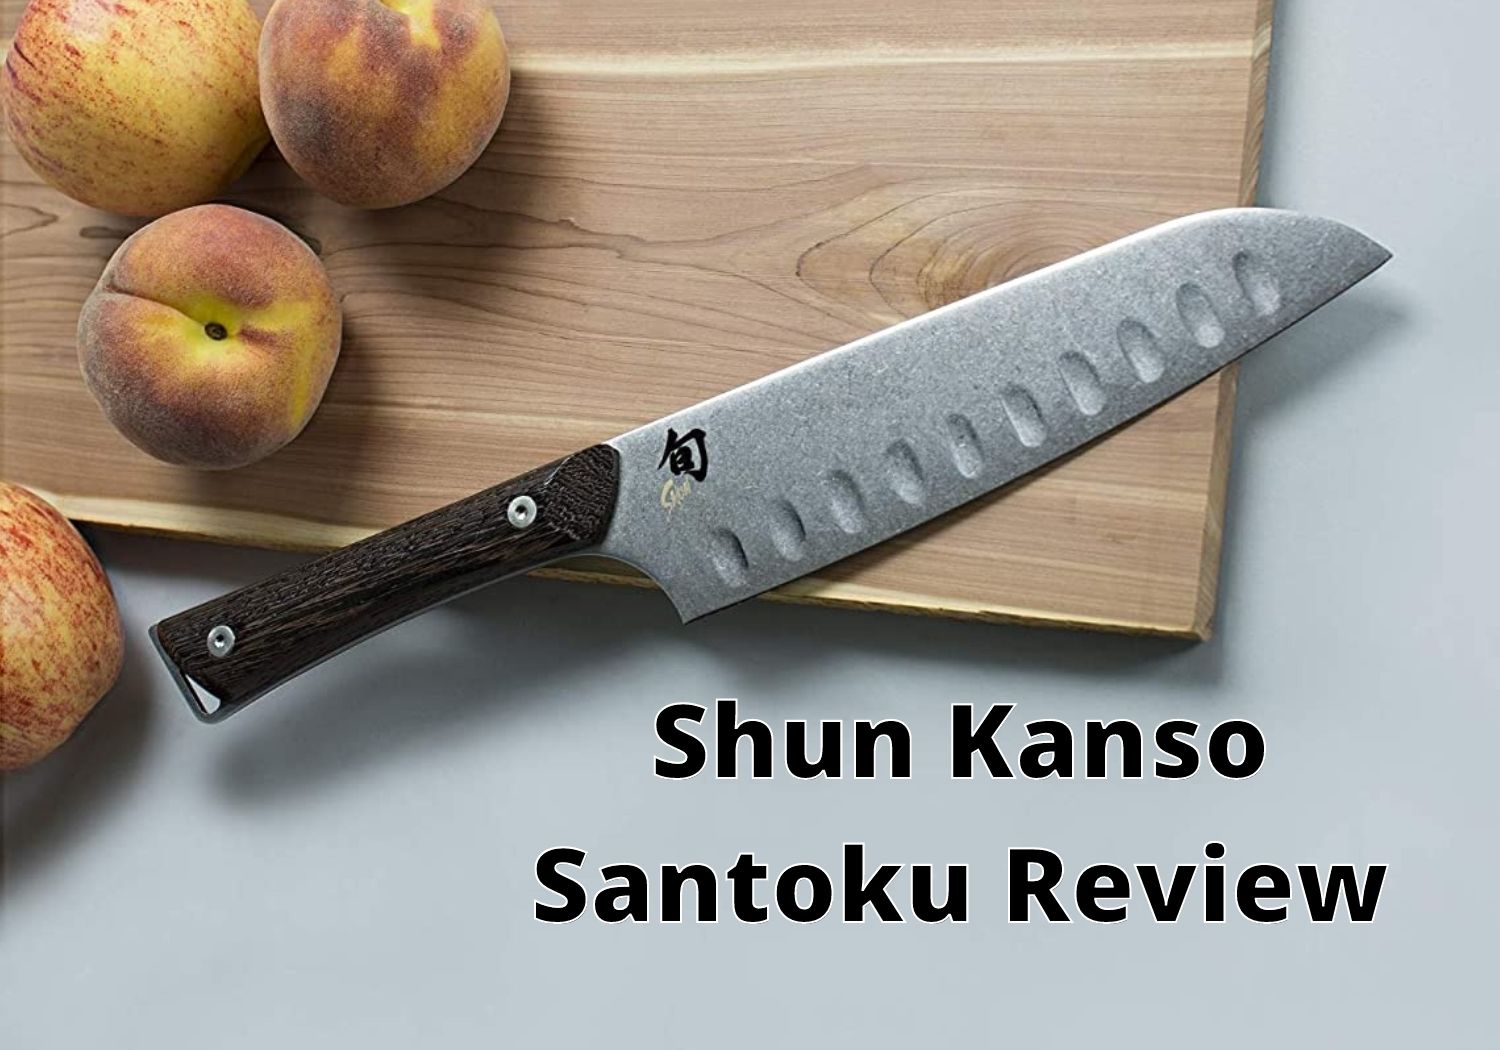 Shun Kanso Santoku Review